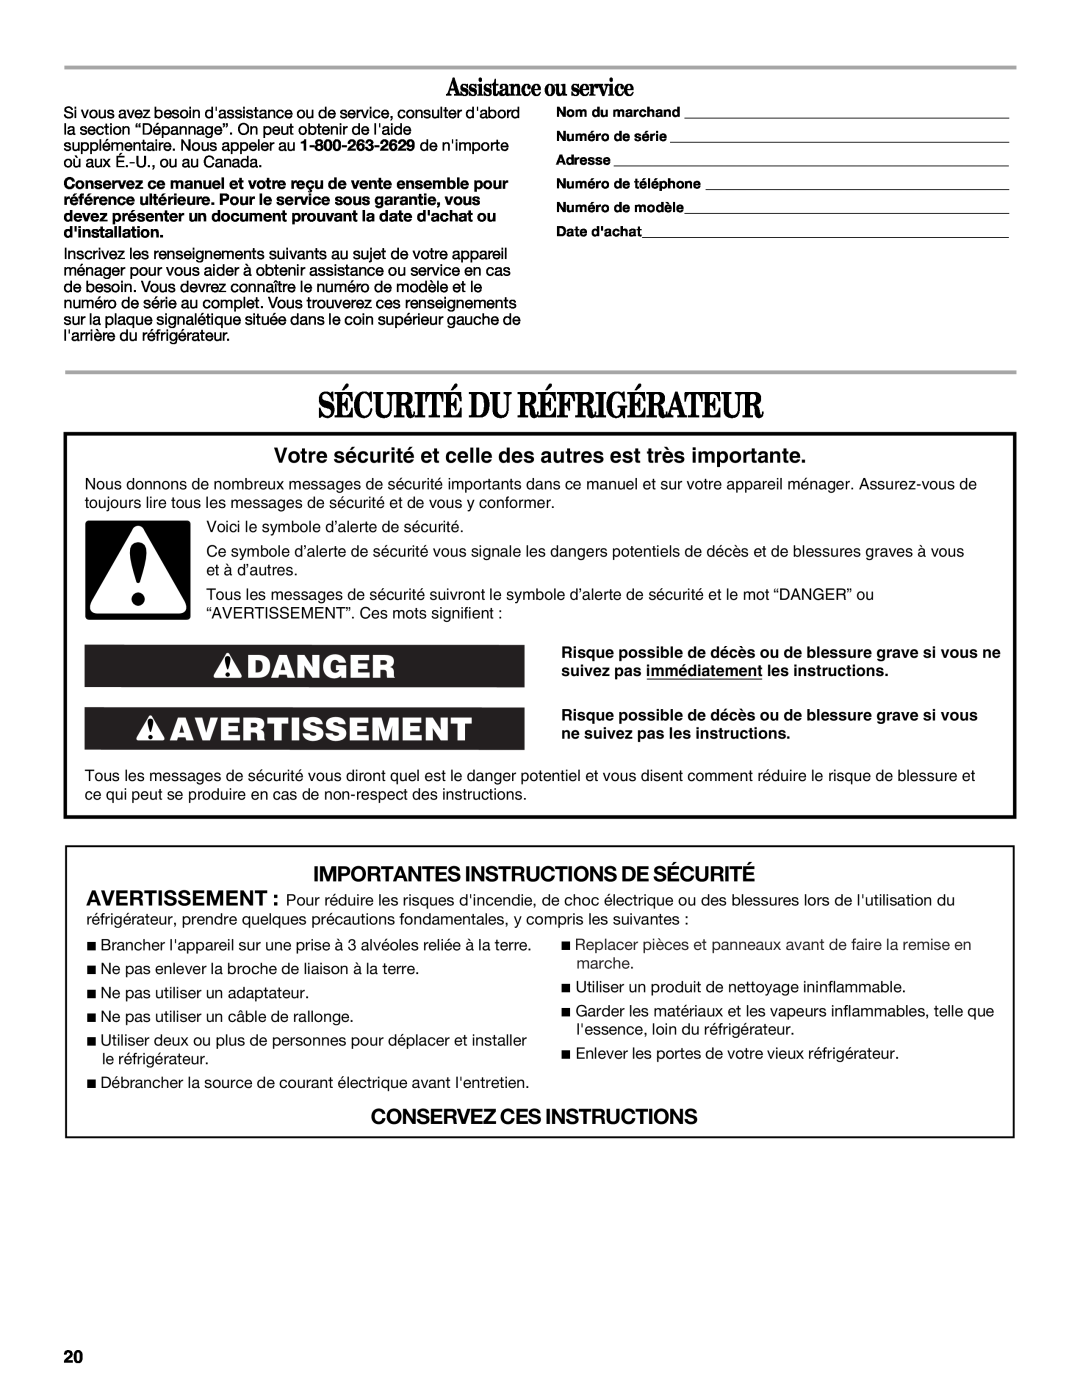 Whirlpool WAR349BSL Sécurité Du Réfrigérateur, Danger Avertissement, Assistance ou service, Conservez Ces Instructions 